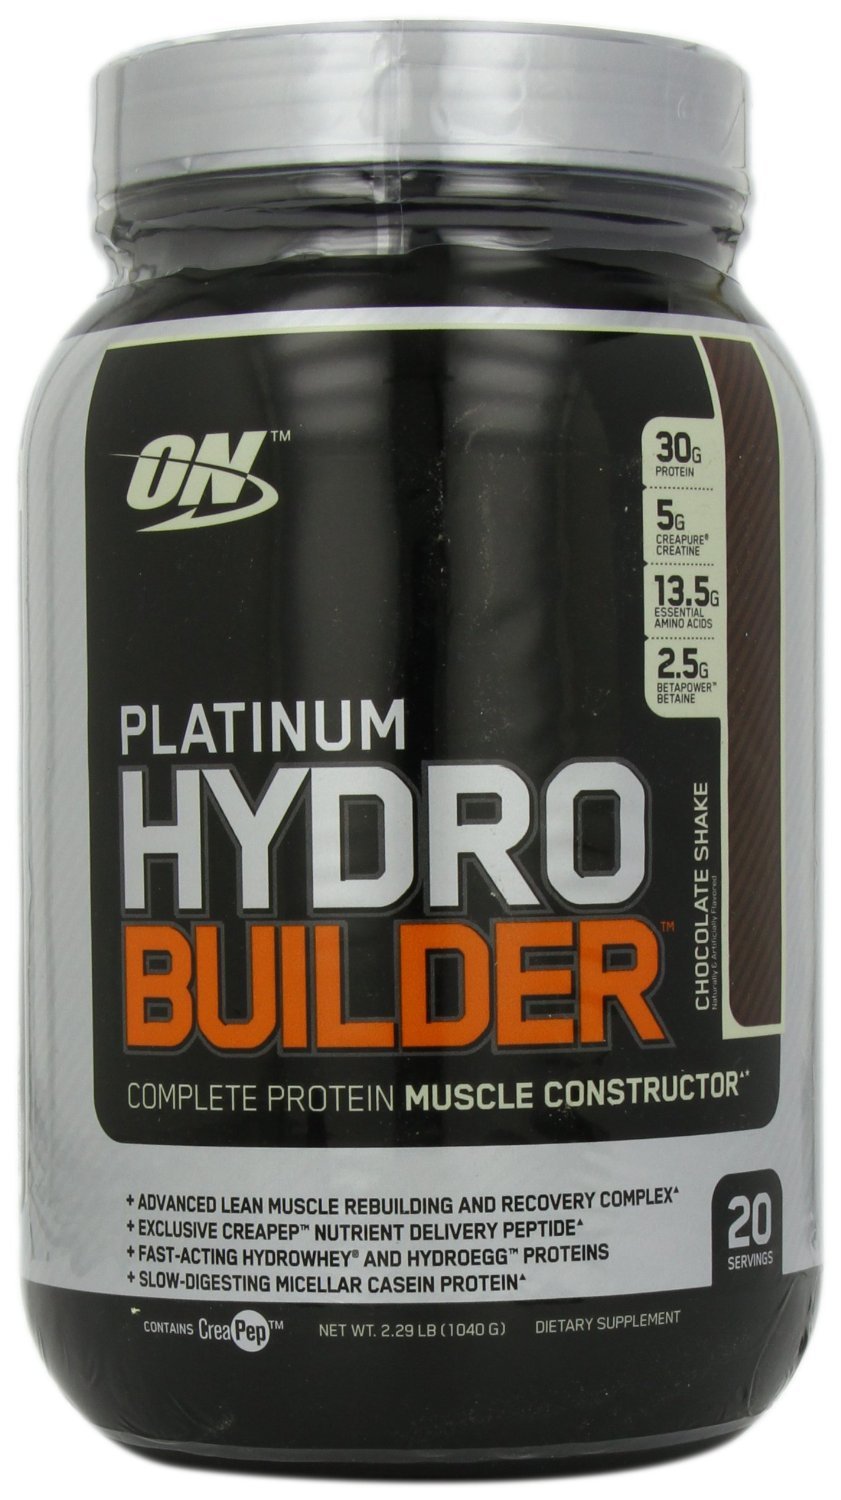 Platinum Hydro Builder, 1040 g, Optimum Nutrition. Protein Blend. 